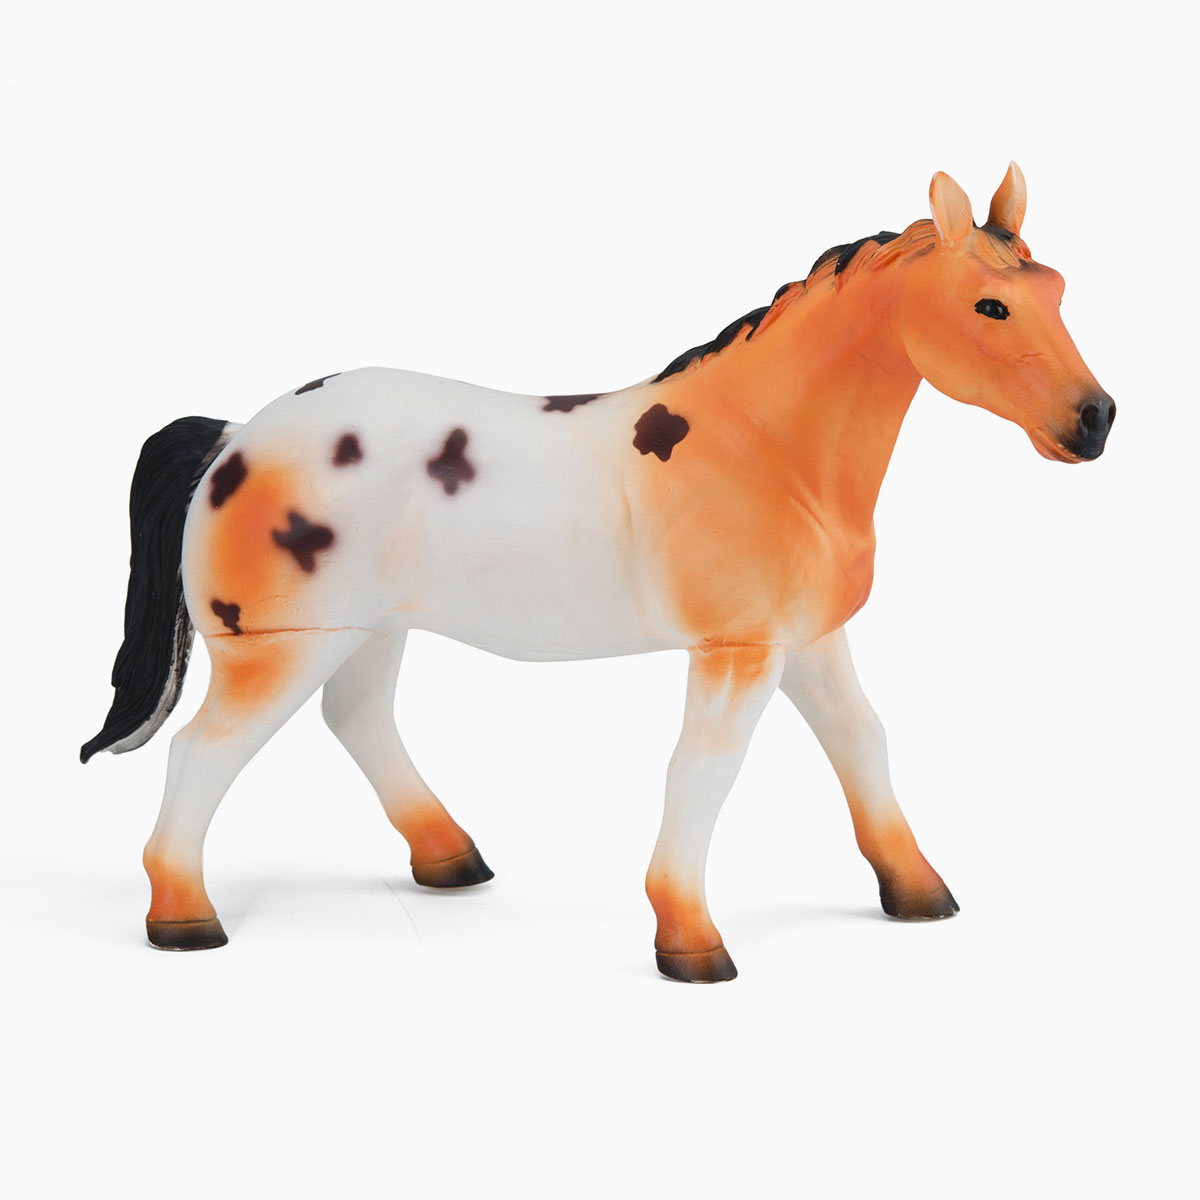 Figurine souple cheval orange et blanc avec tâches noires